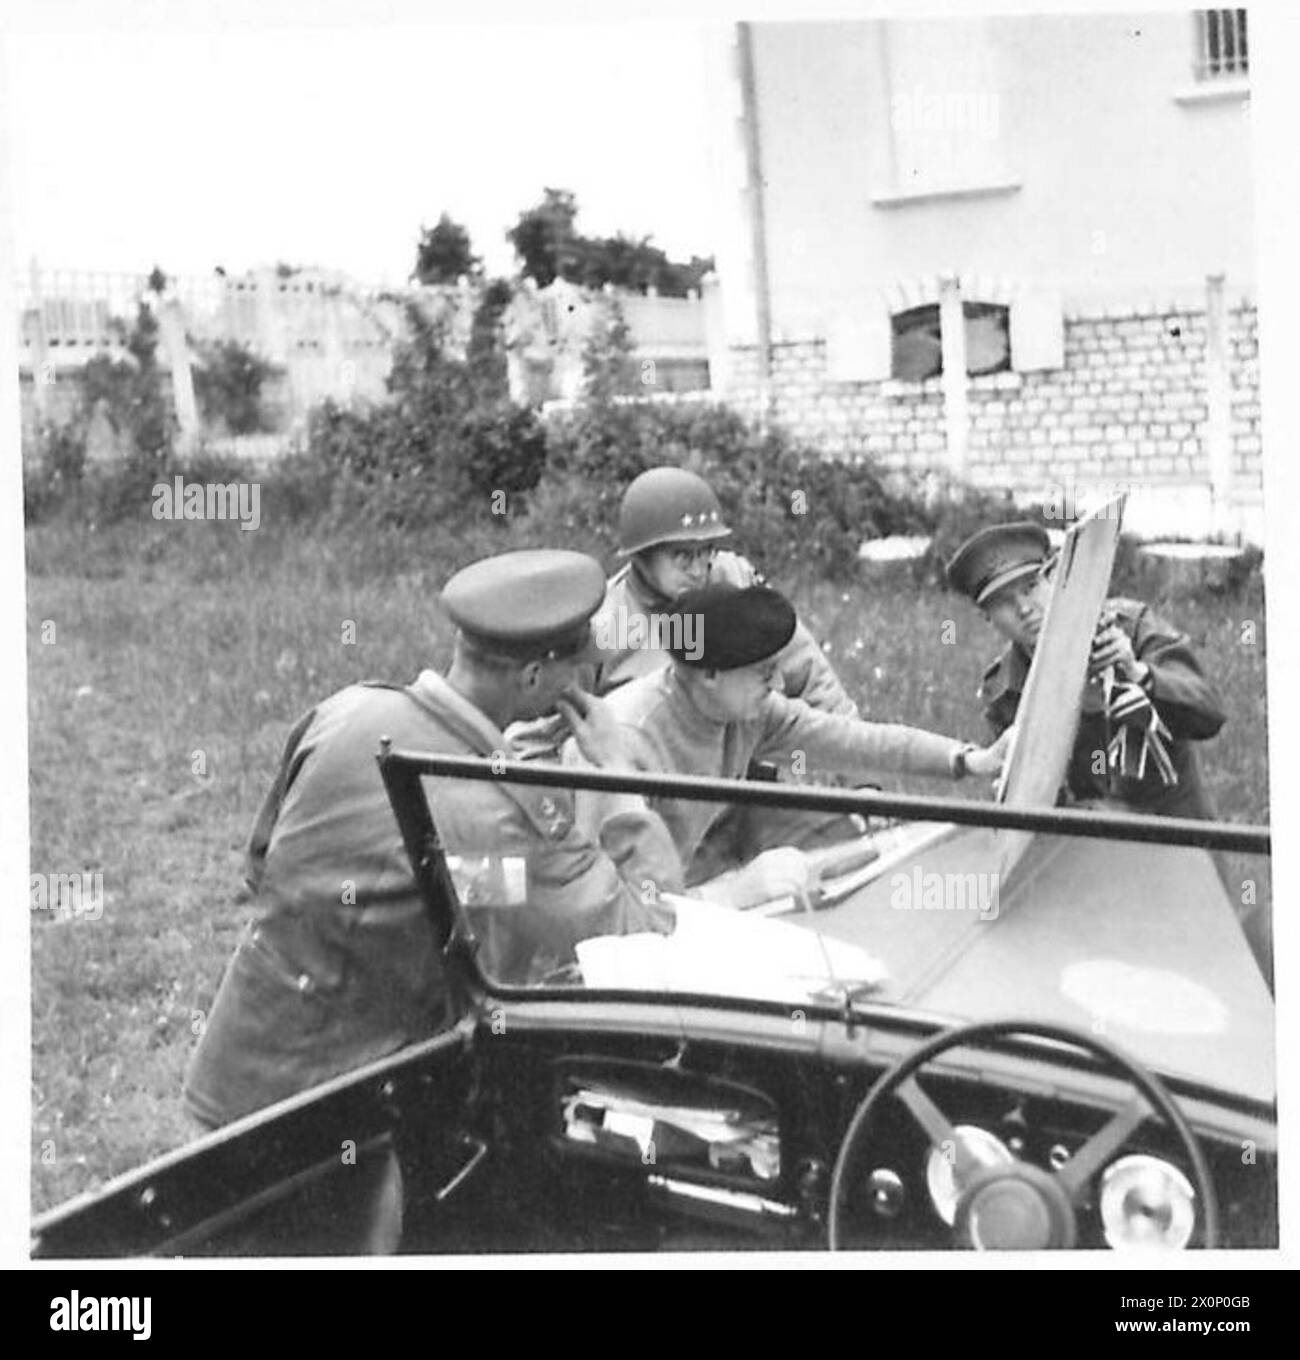 FORCES ALLIÉES DANS LA CAMPAGNE DE NORMANDIE 1944 - le général Sir Bernard Montgomery (au centre), le lieutenant-général Miles Dempsey (à gauche), commandant la deuxième armée britannique et le lieutenant-général Omar Bradley, commandant la première armée américaine, consultez une carte sur le capot de la voiture d'état-major de Monty, près de Port-en-Bessin, le 10 juin 1944 Banque D'Images